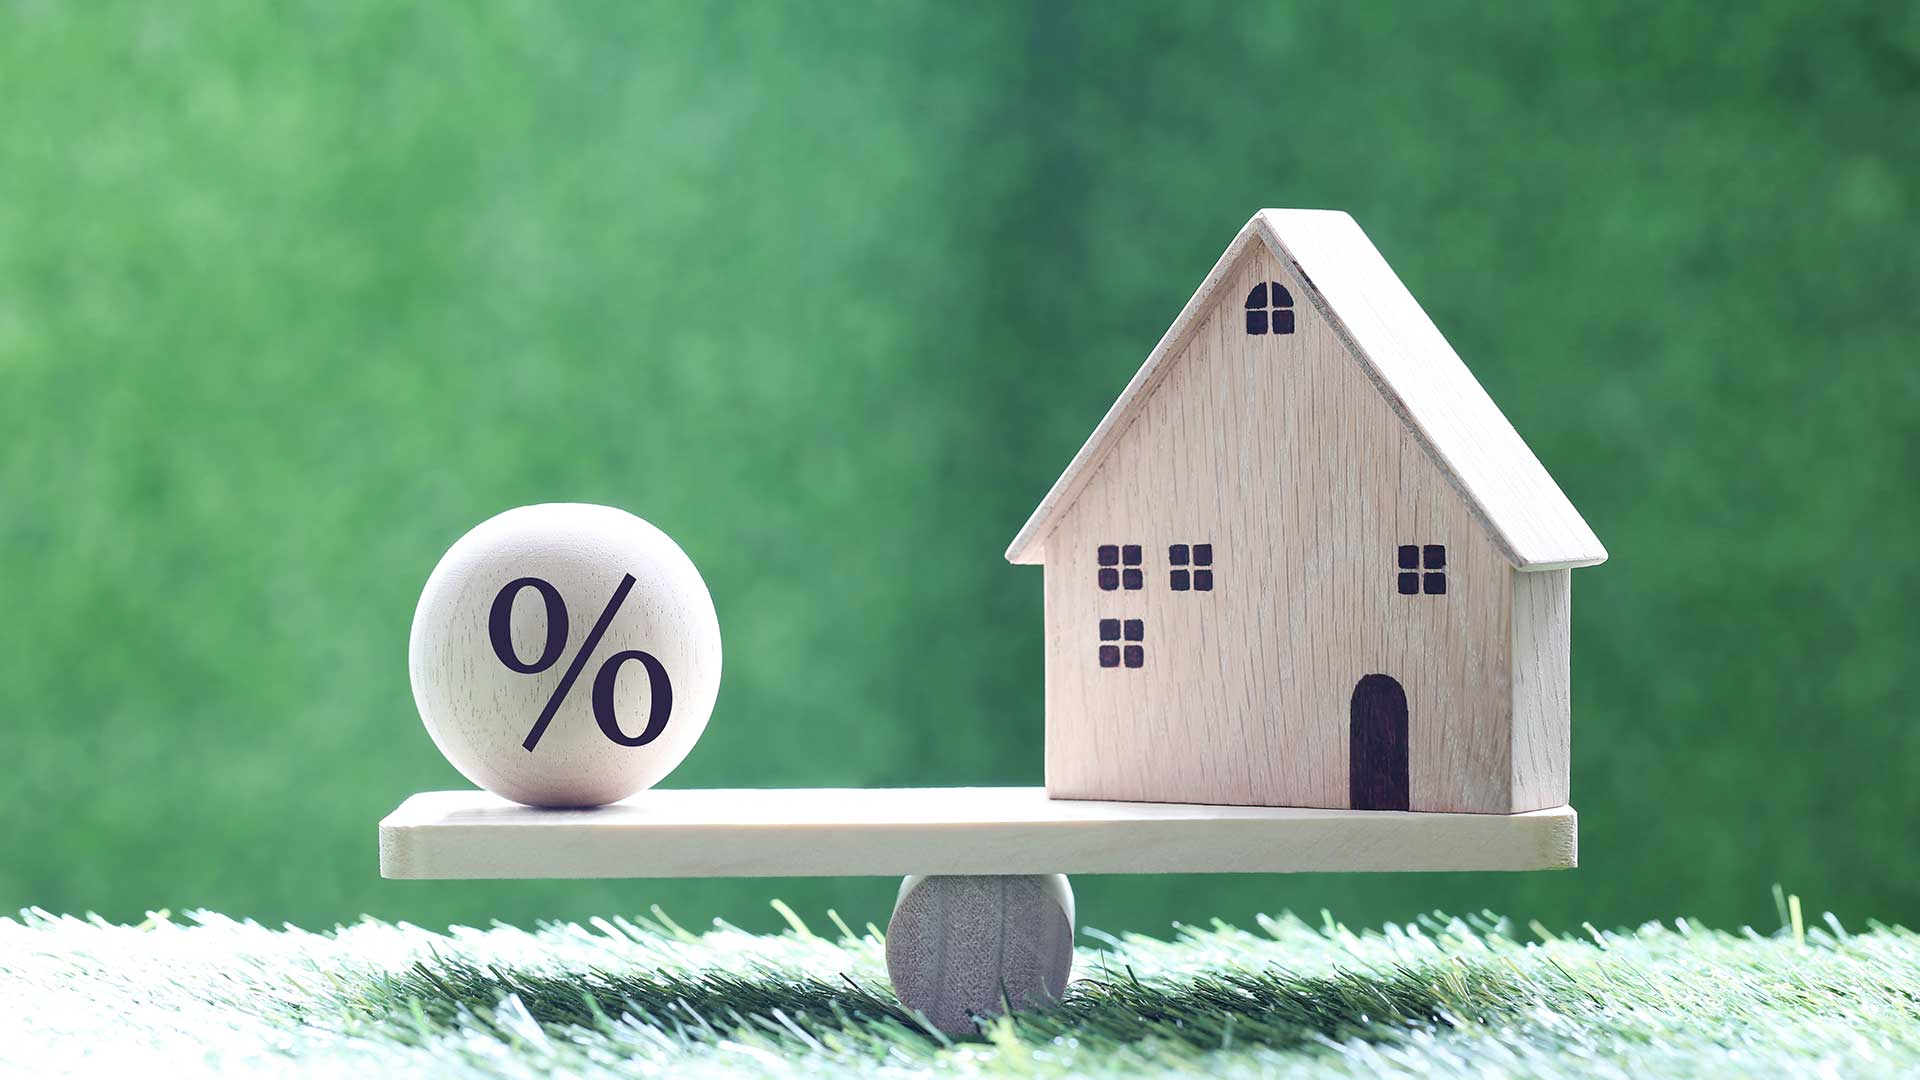 model domu z ikoną symbolu procentu stojący na drewnianej huśtawce na zielonym tle